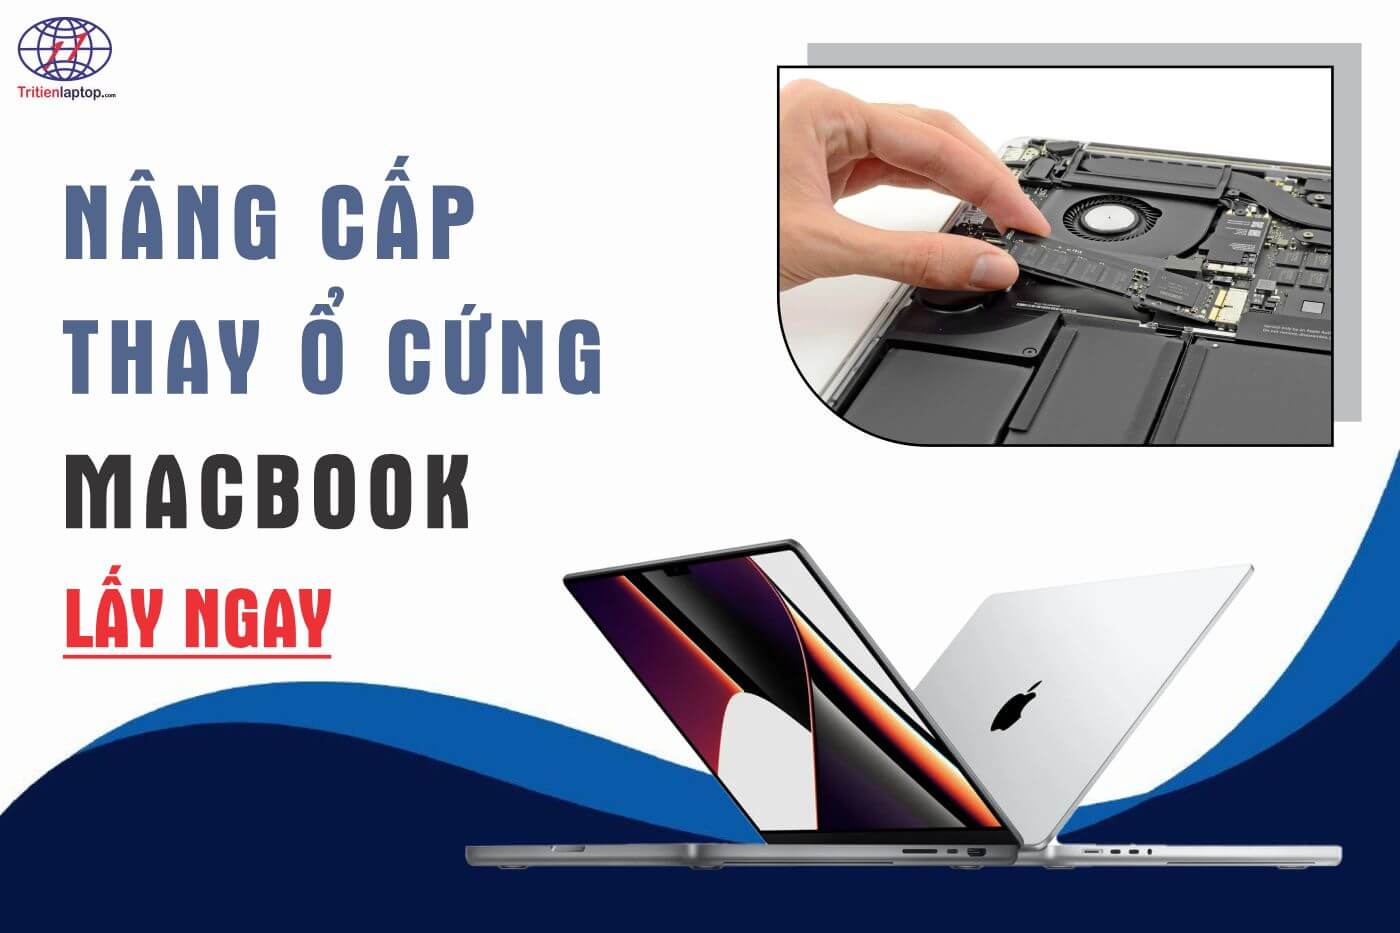 Nâng cấp, thay ổ cứng Macbook lấy ngay tại Hà Nội